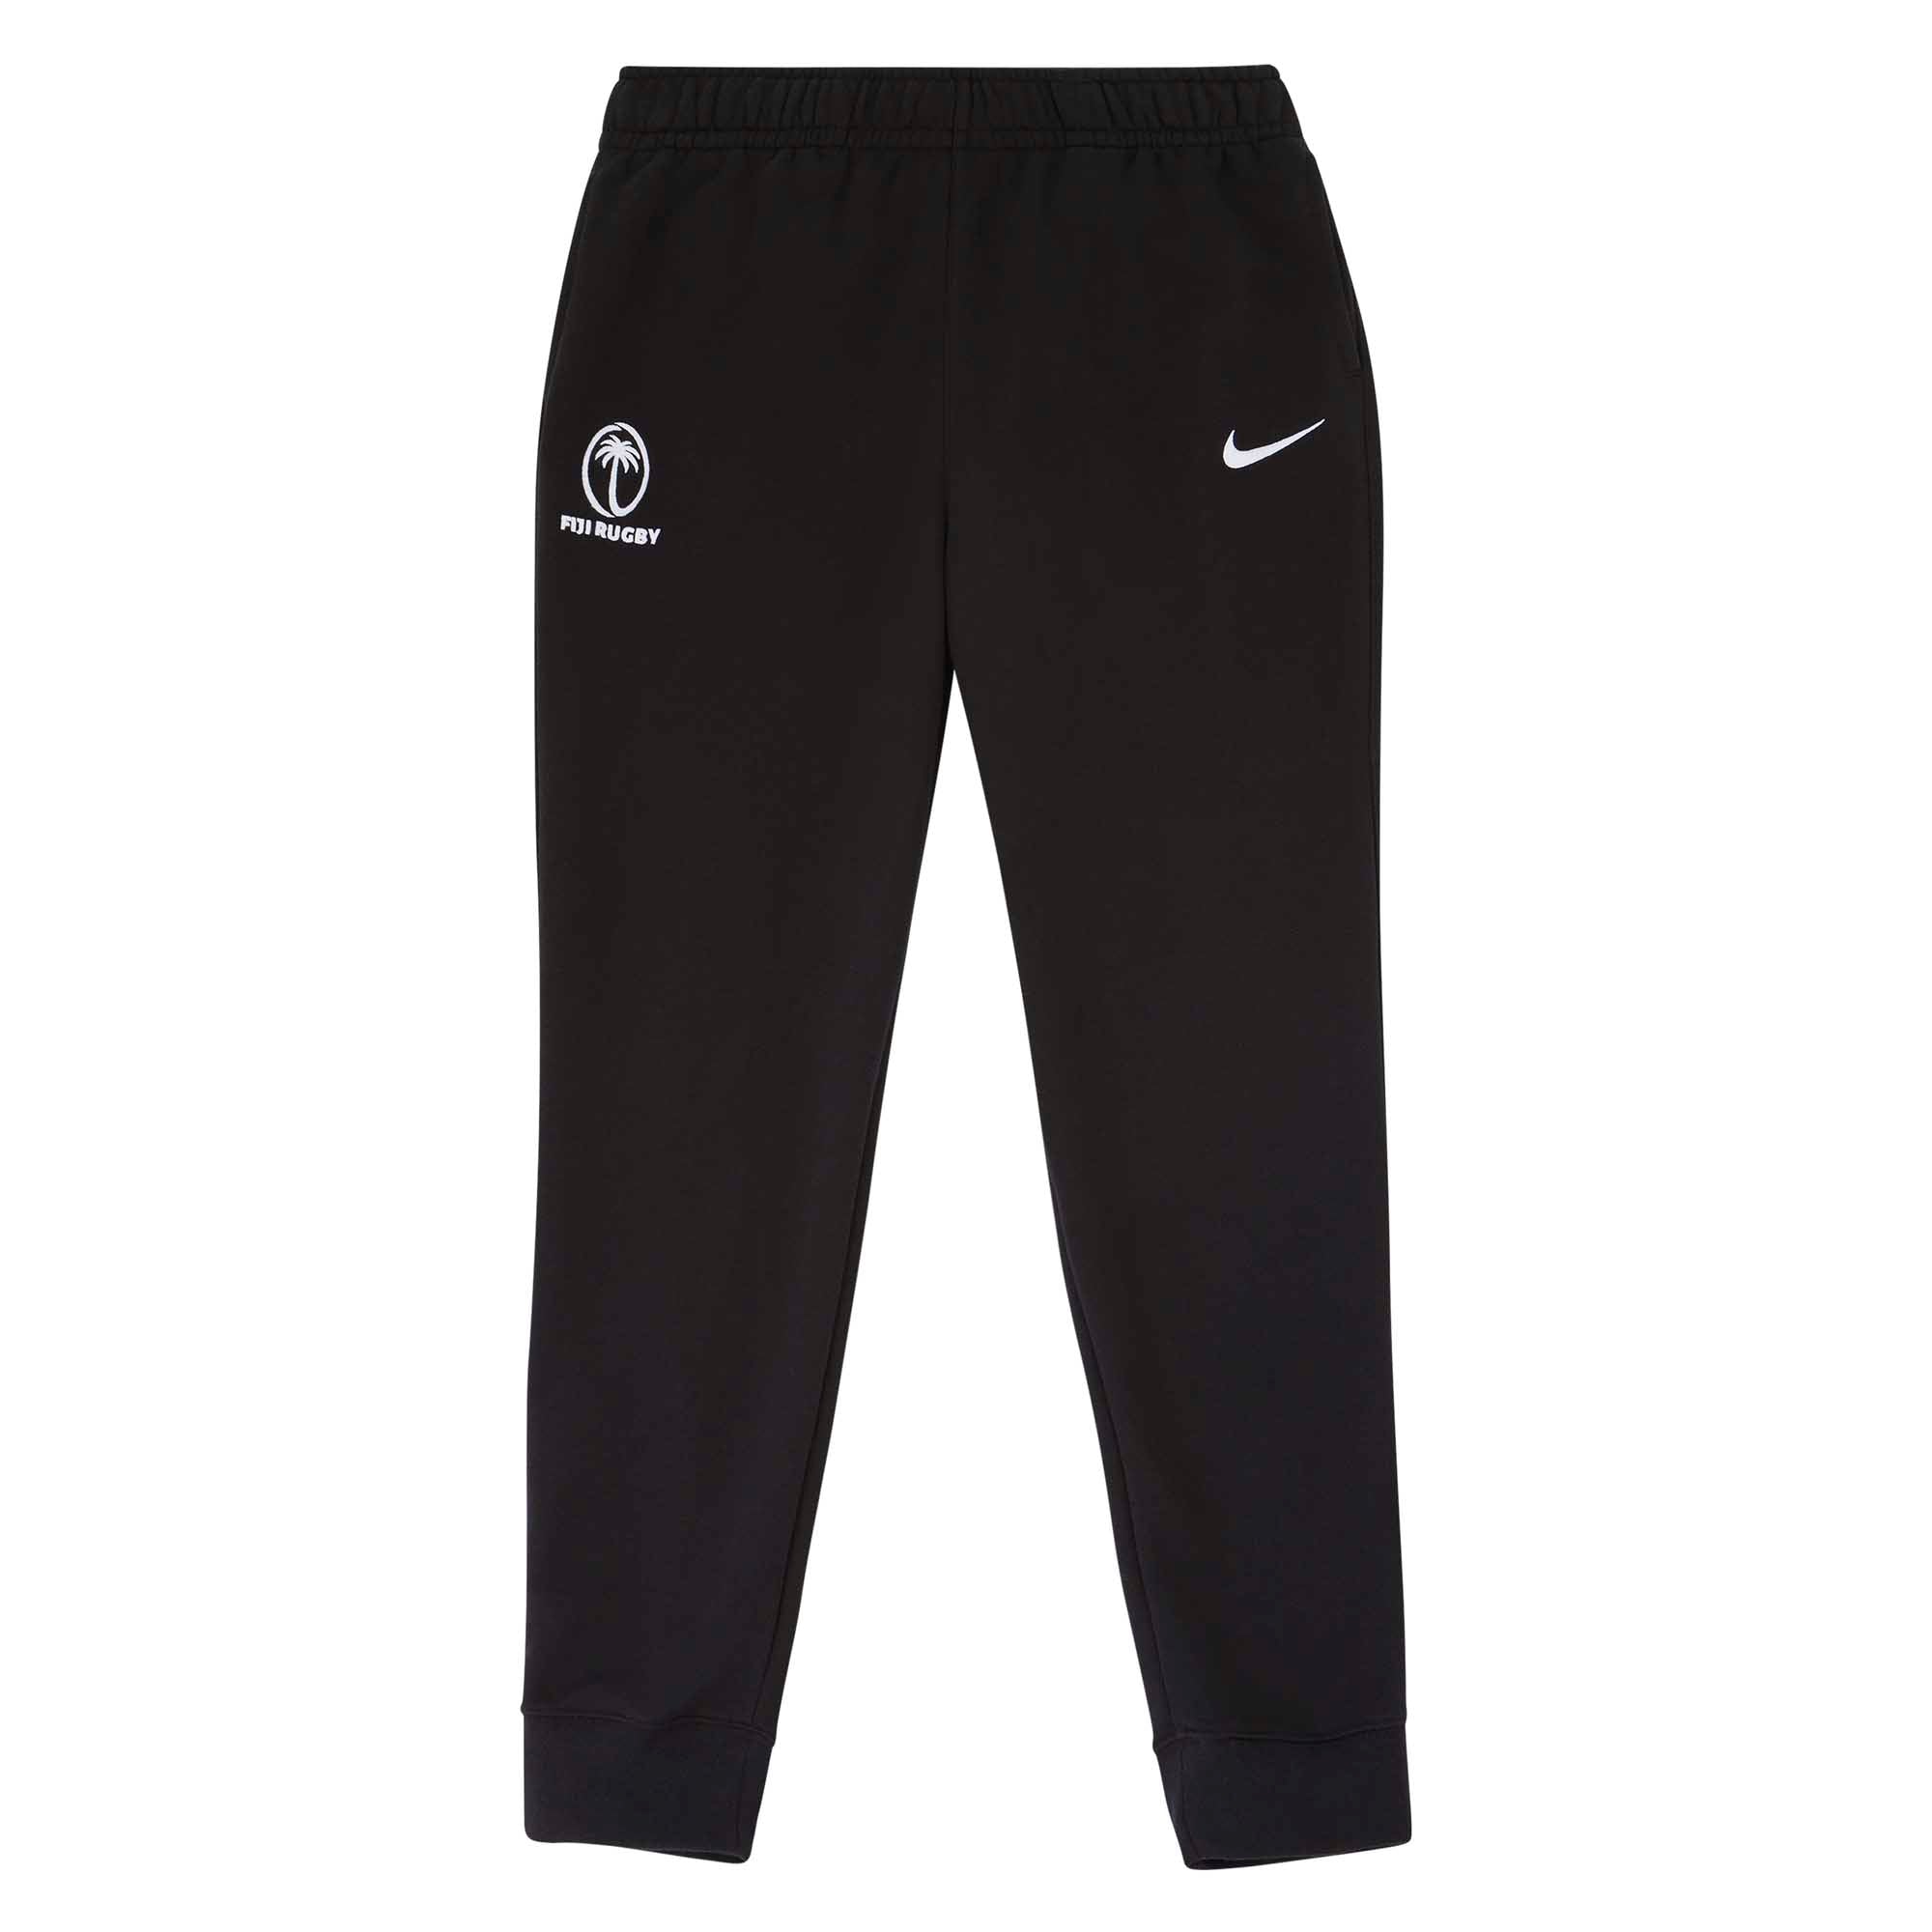 Nike Mens Pro Flex Vent Max Pants - Black | Life Style Sports UK